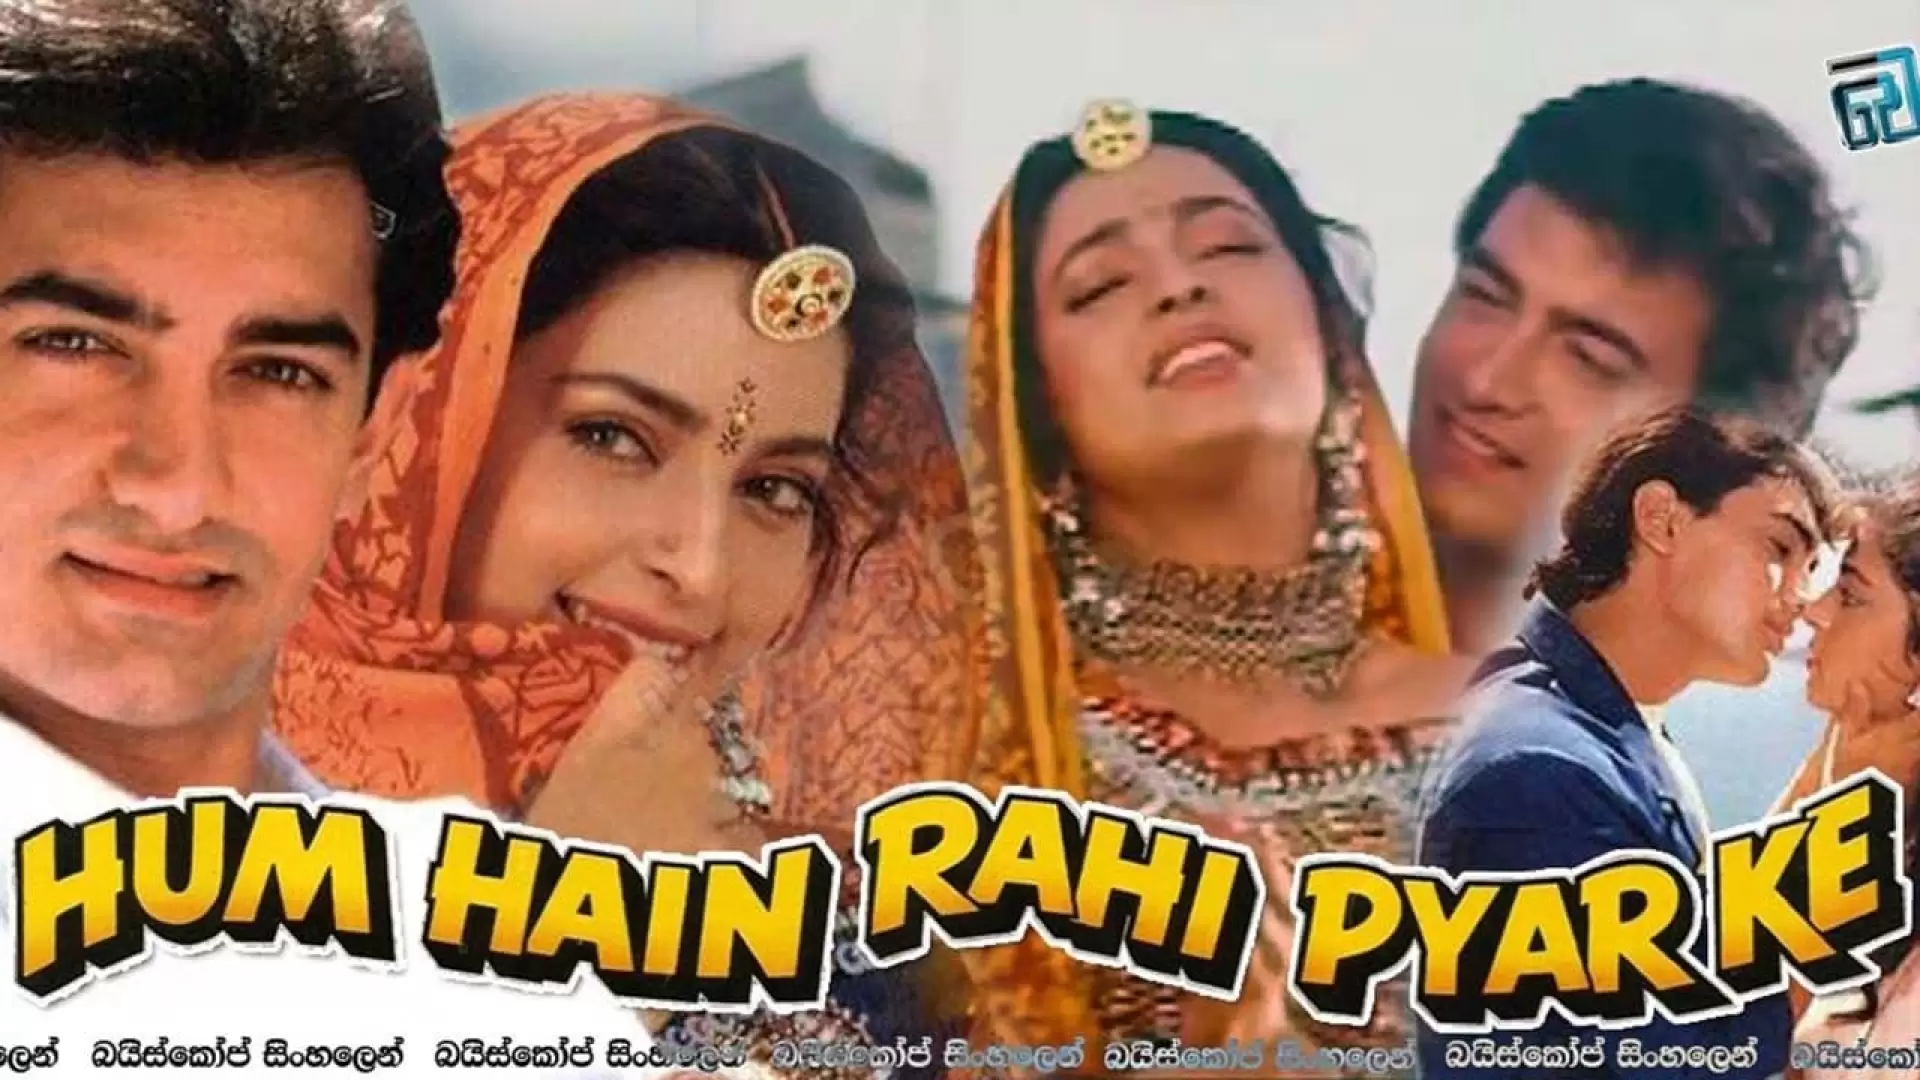 دانلود فیلم Hum Hain Rahi Pyar Ke 1993 با زیرنویس فارسی